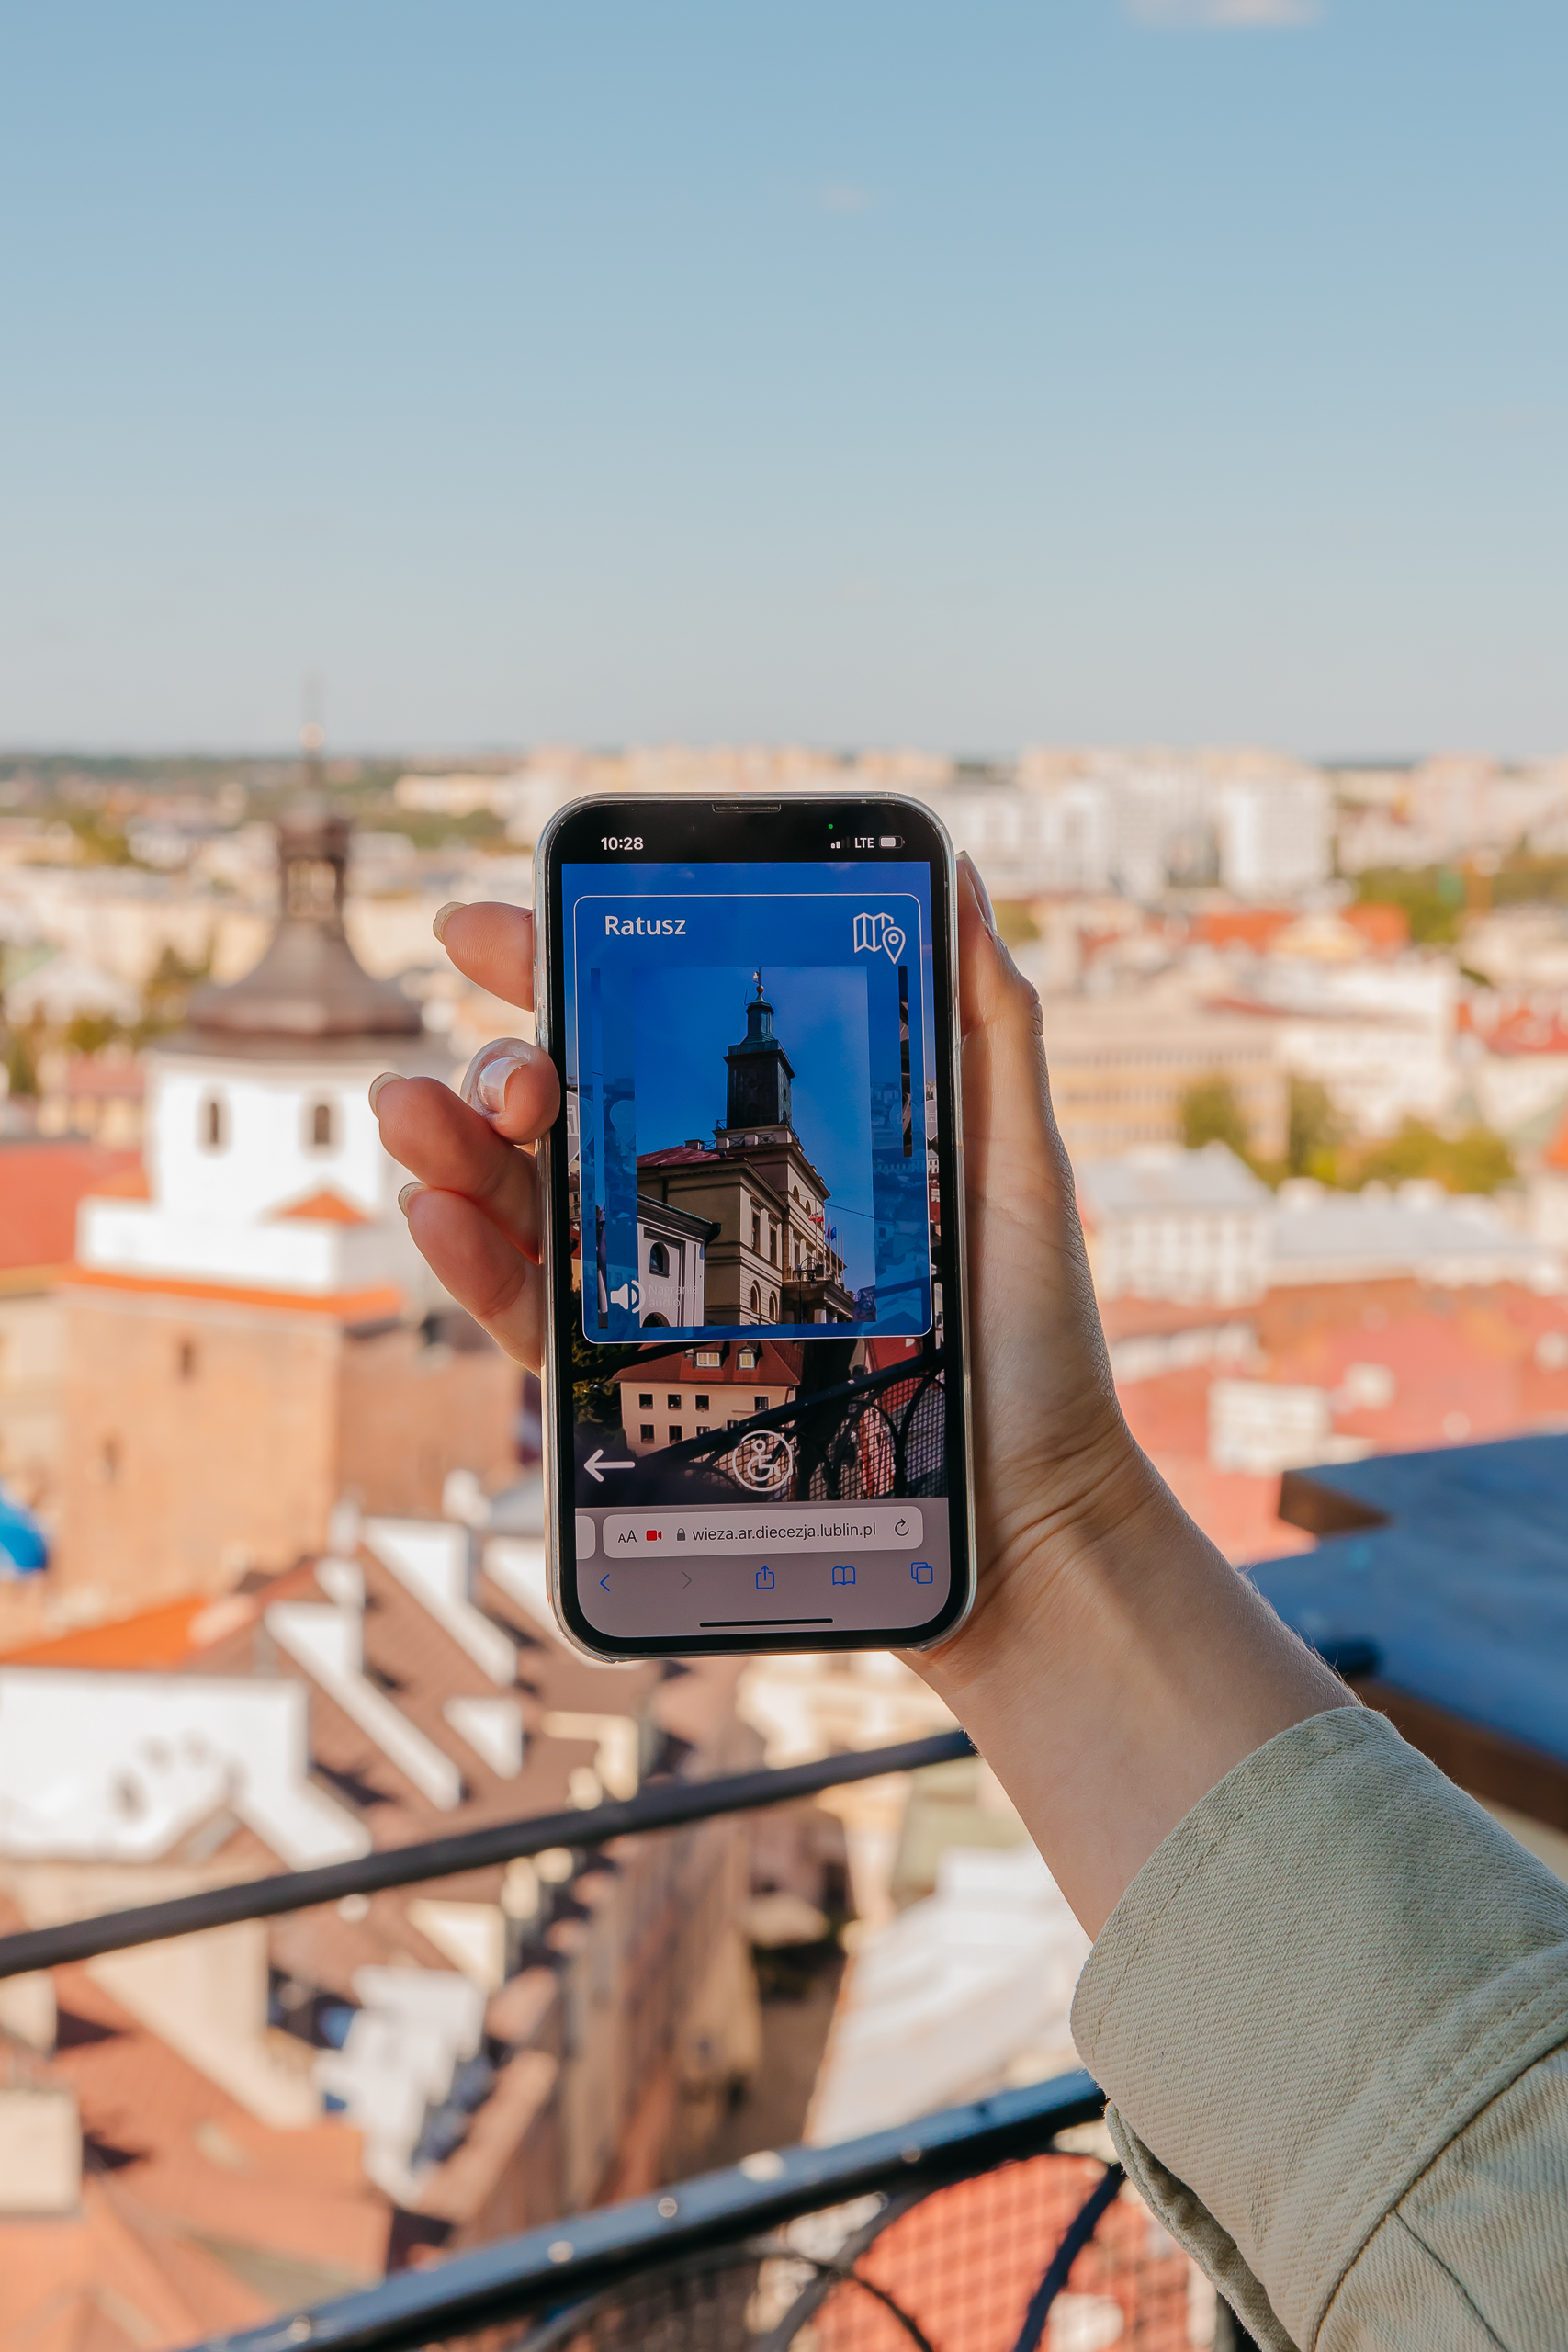 Już jest – aplikacja Wieży Trynitarskiej! Zaplanuj swoją wycieczkę po Lublinie